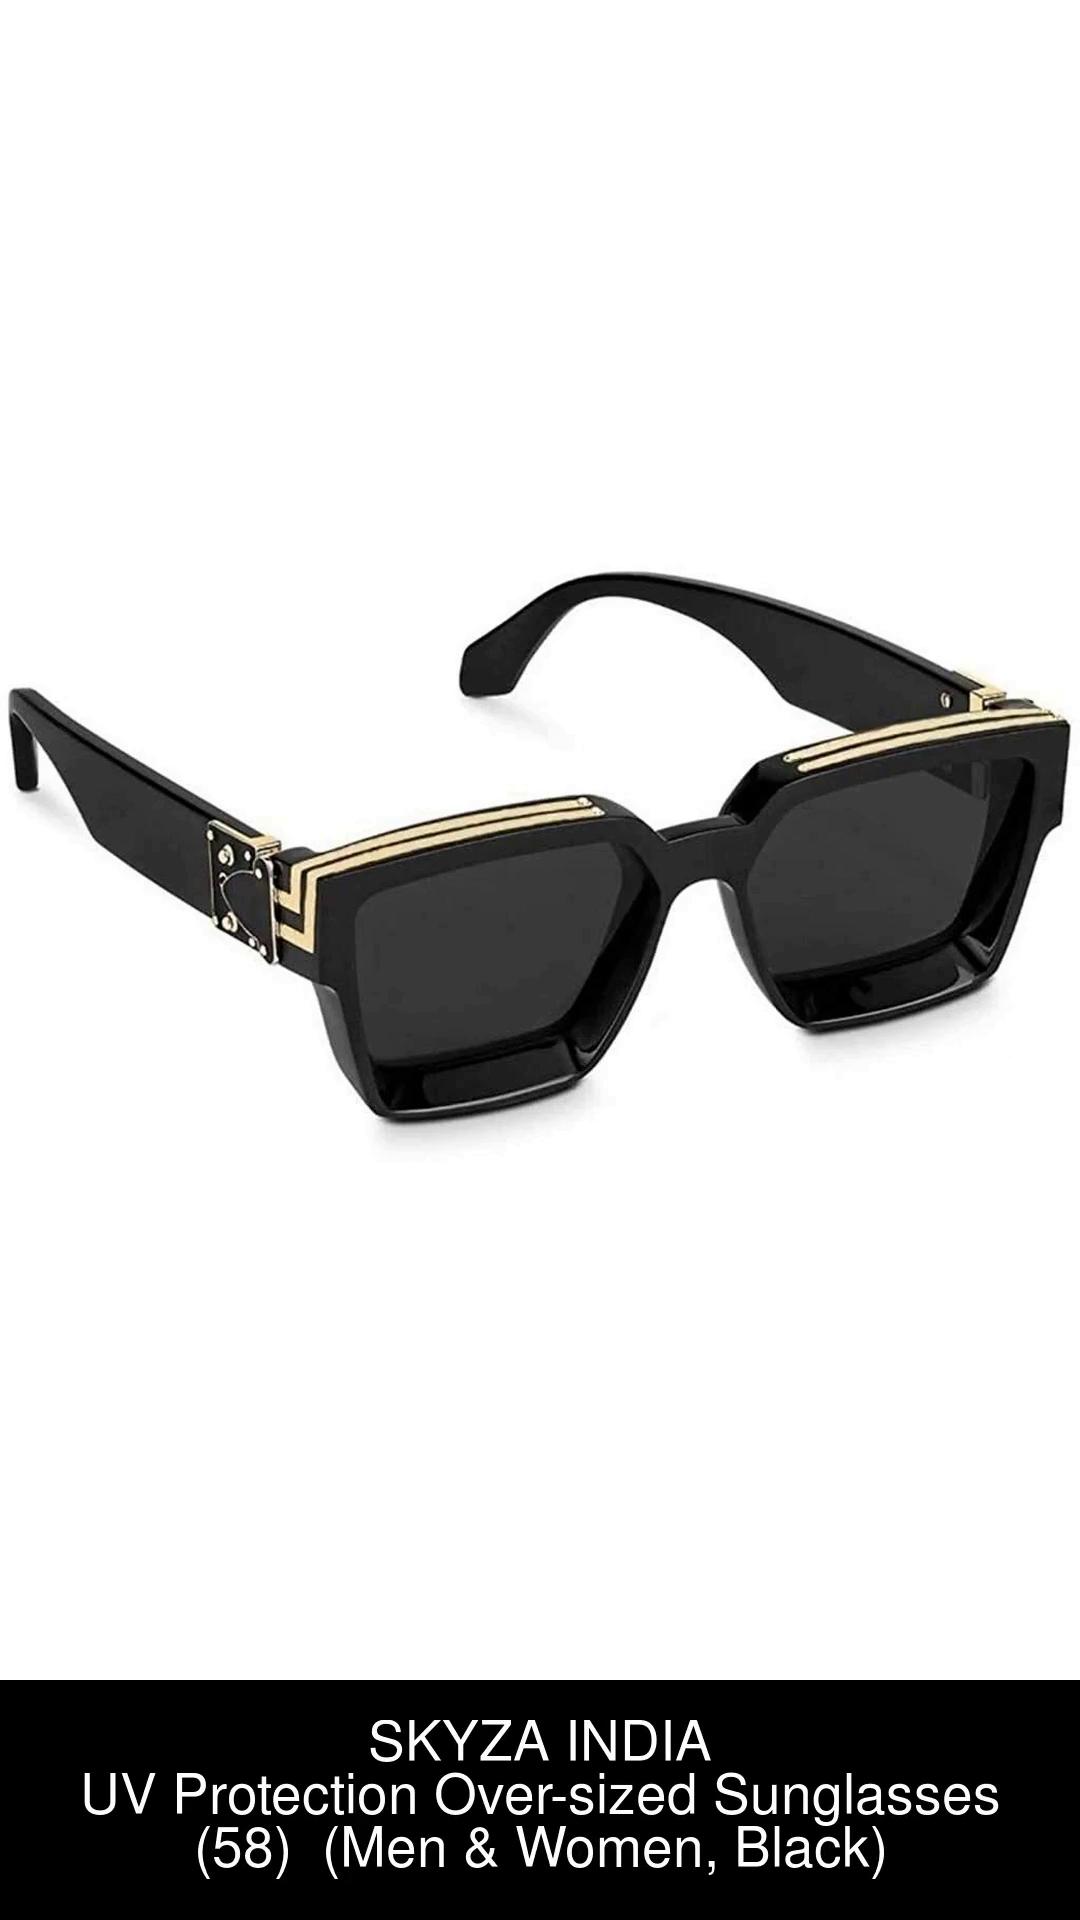 LV luxury millionaire sunglasses( for men and women)